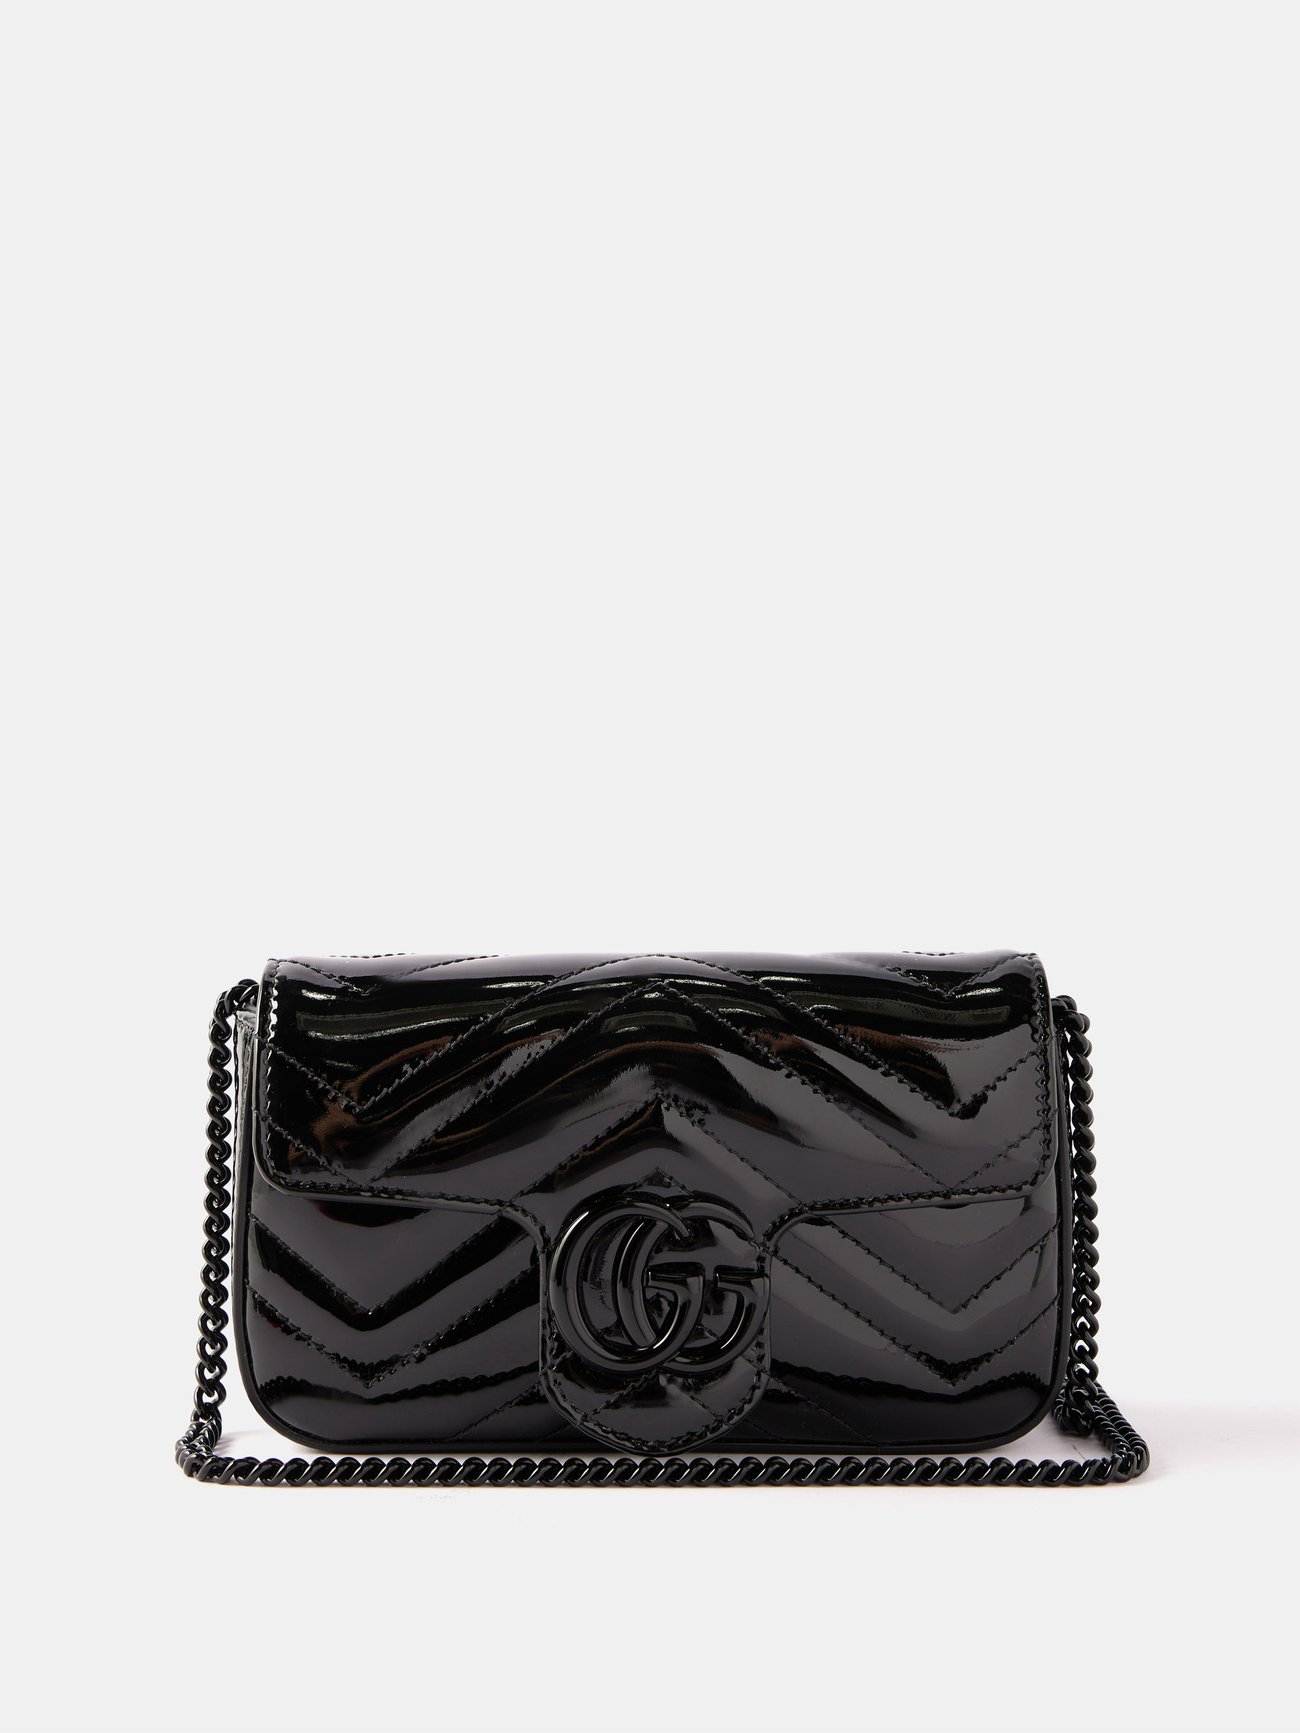 Gucci GG Marmont Patent Super Mini Bag Black Patent Leather in